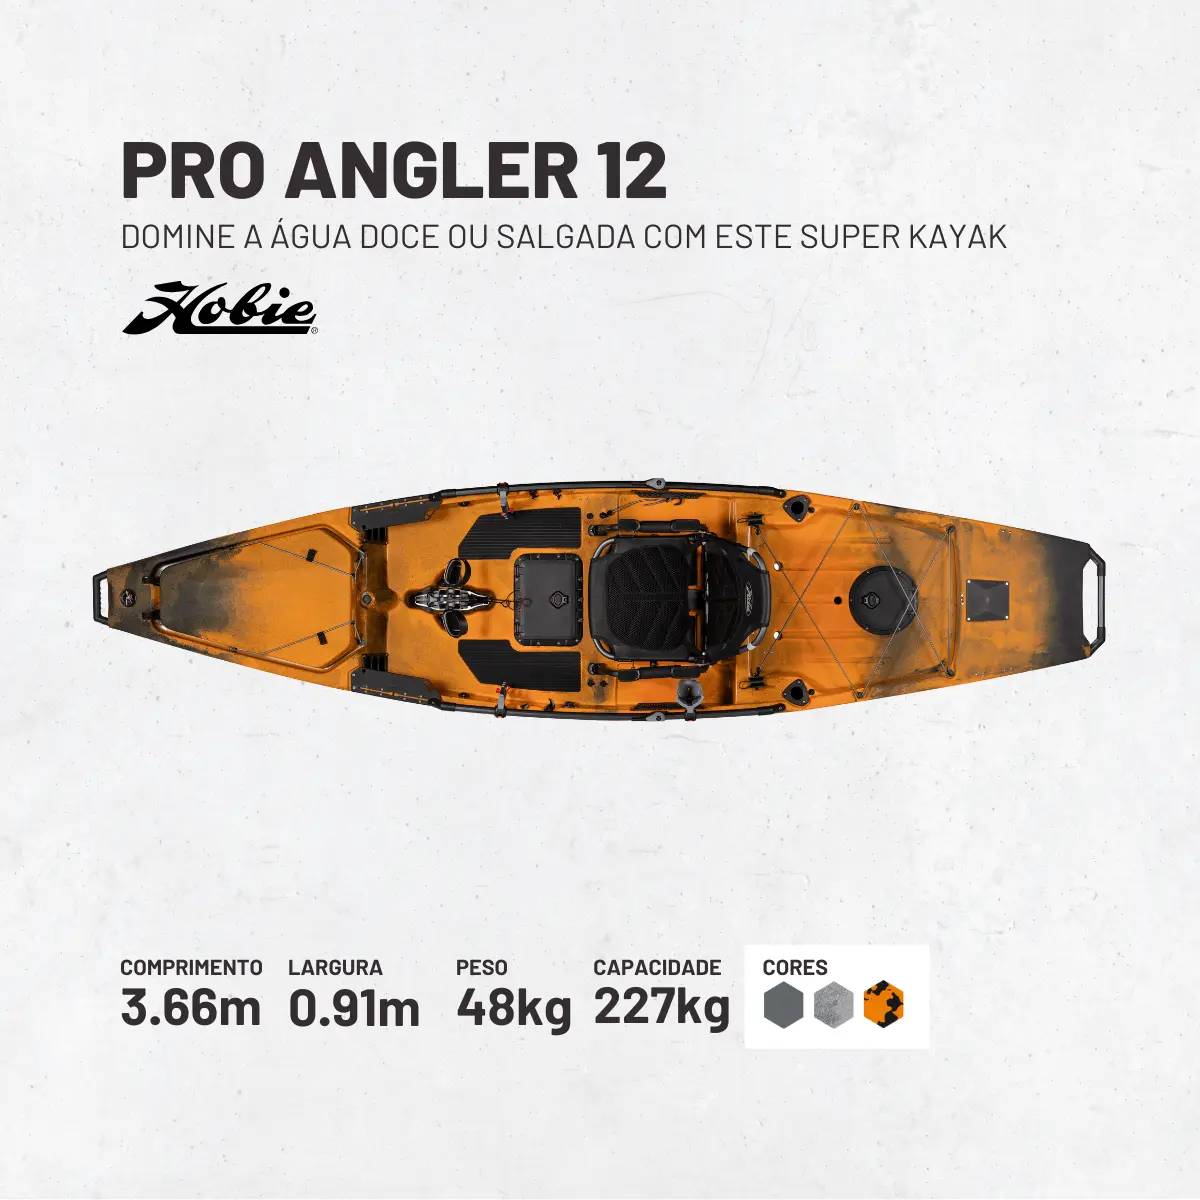 Apresentação Hobie Mirage Pro Angler 12